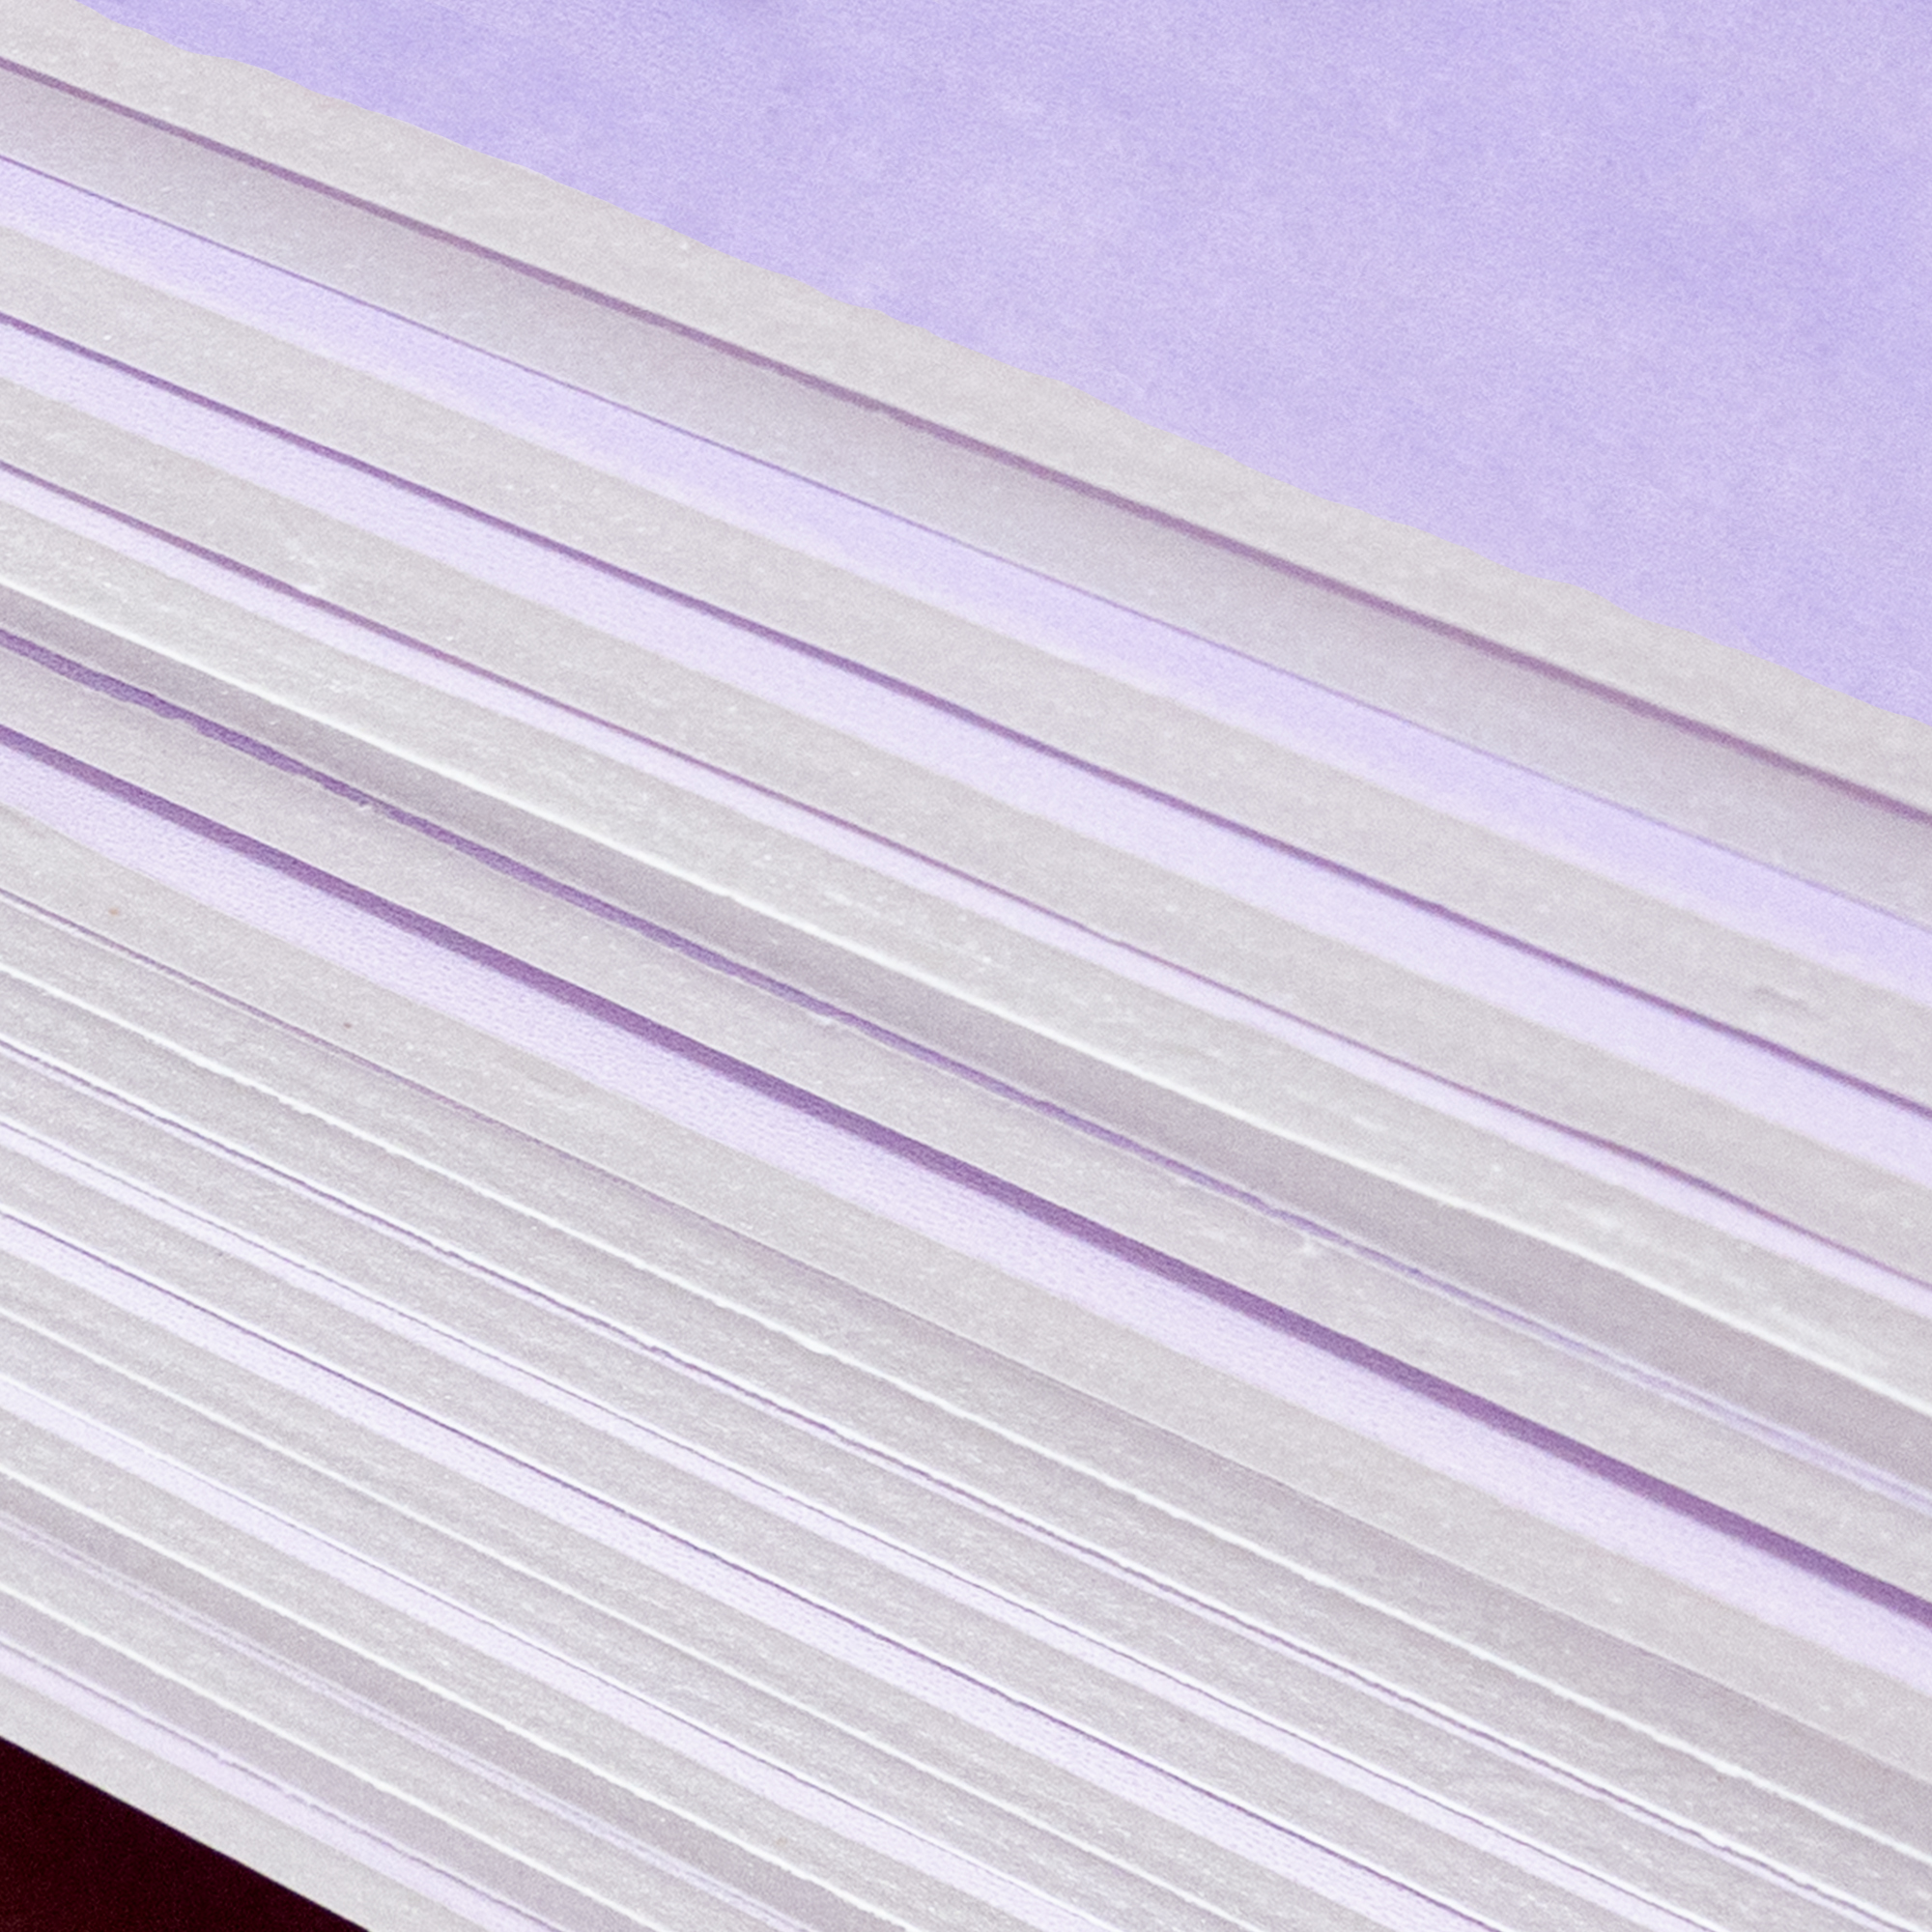 Lavender Felt 9″x12″ Sheet